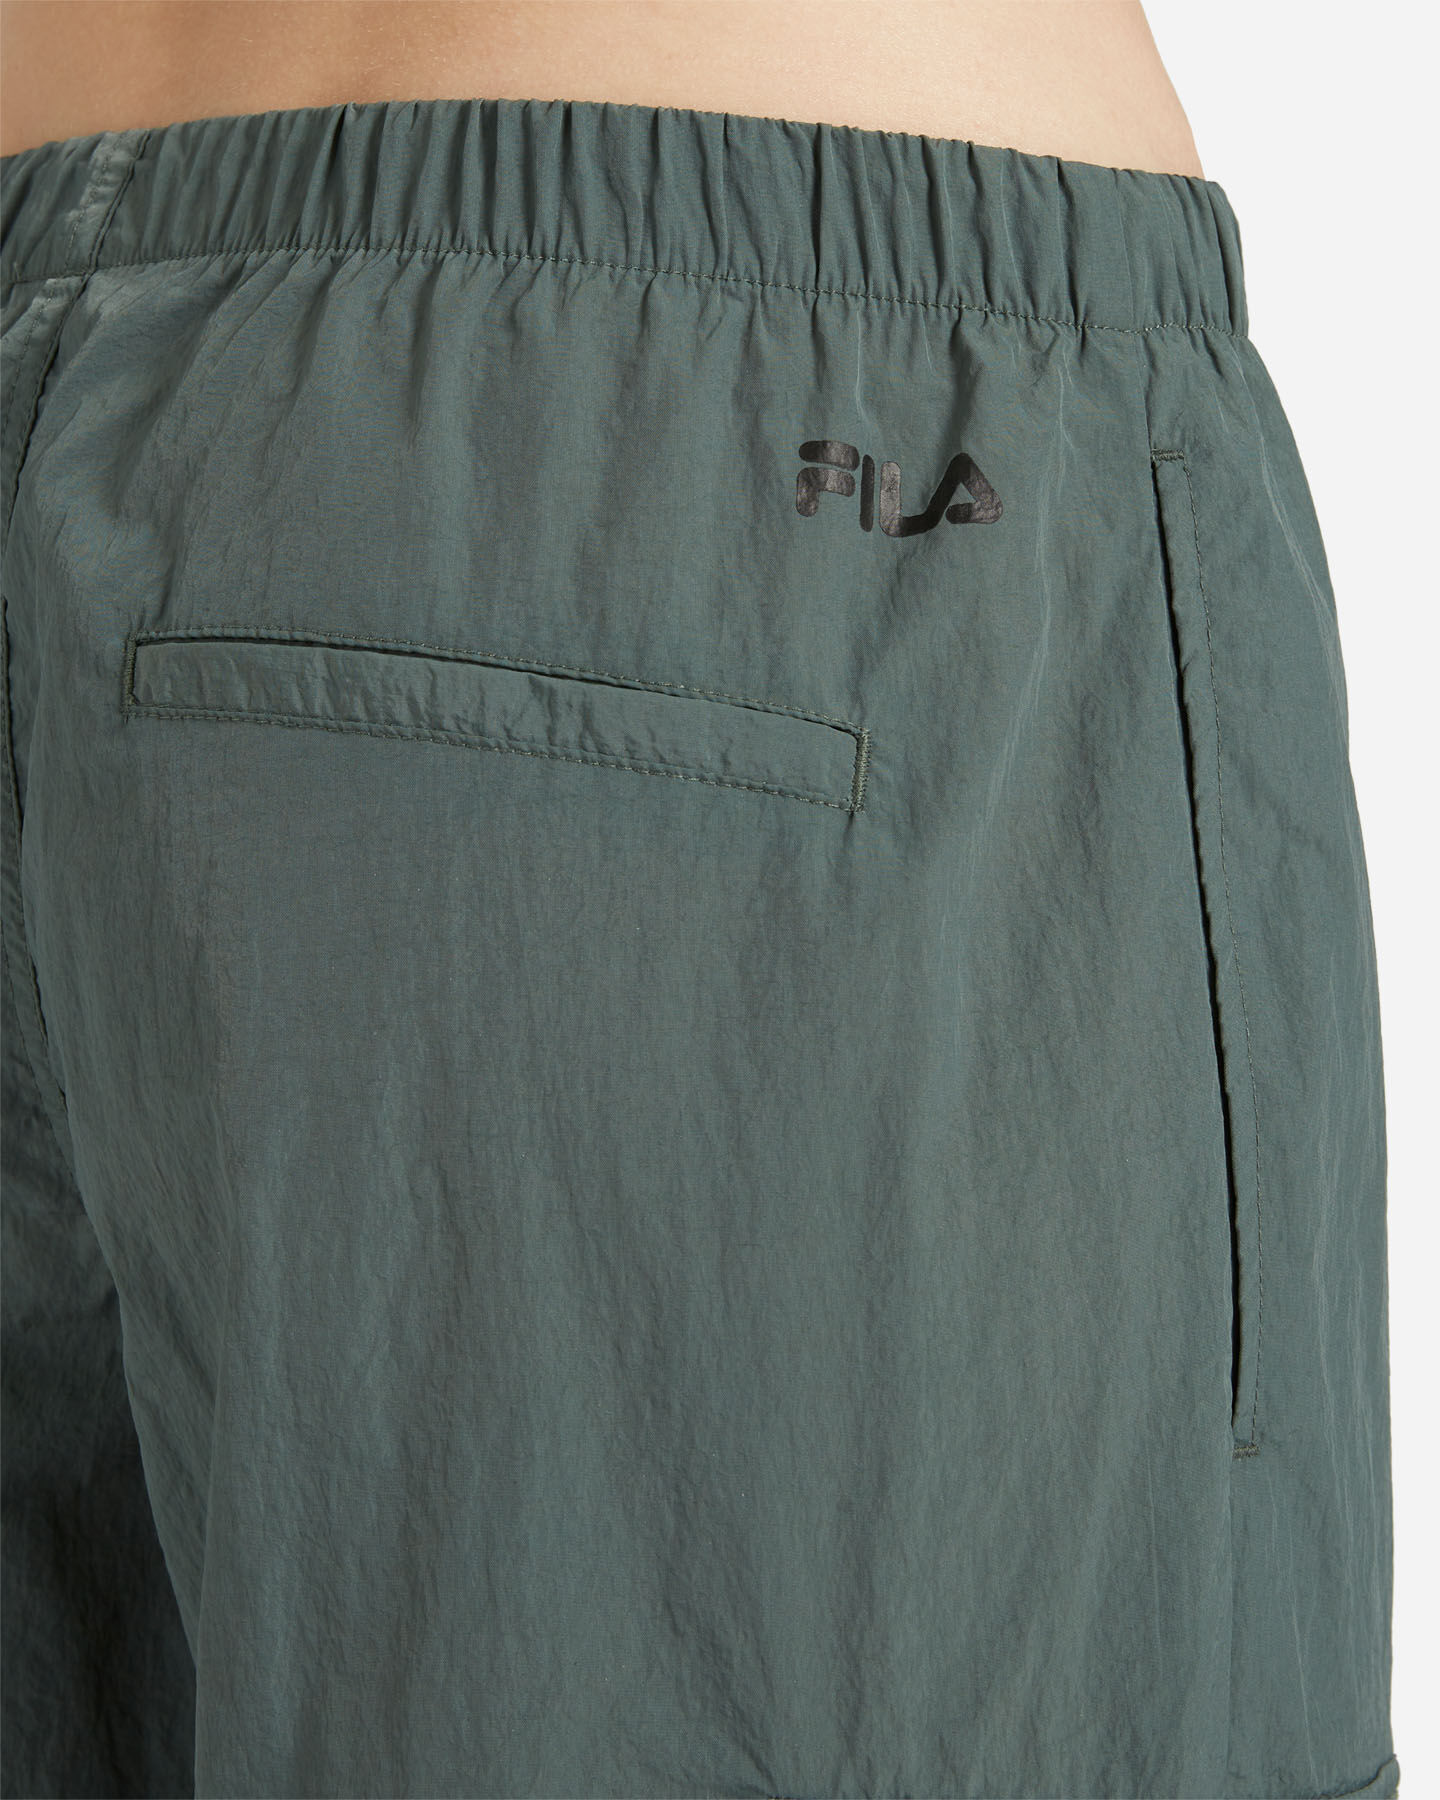  Pantalone FILA RIDER W S4130255|783|XS scatto 3